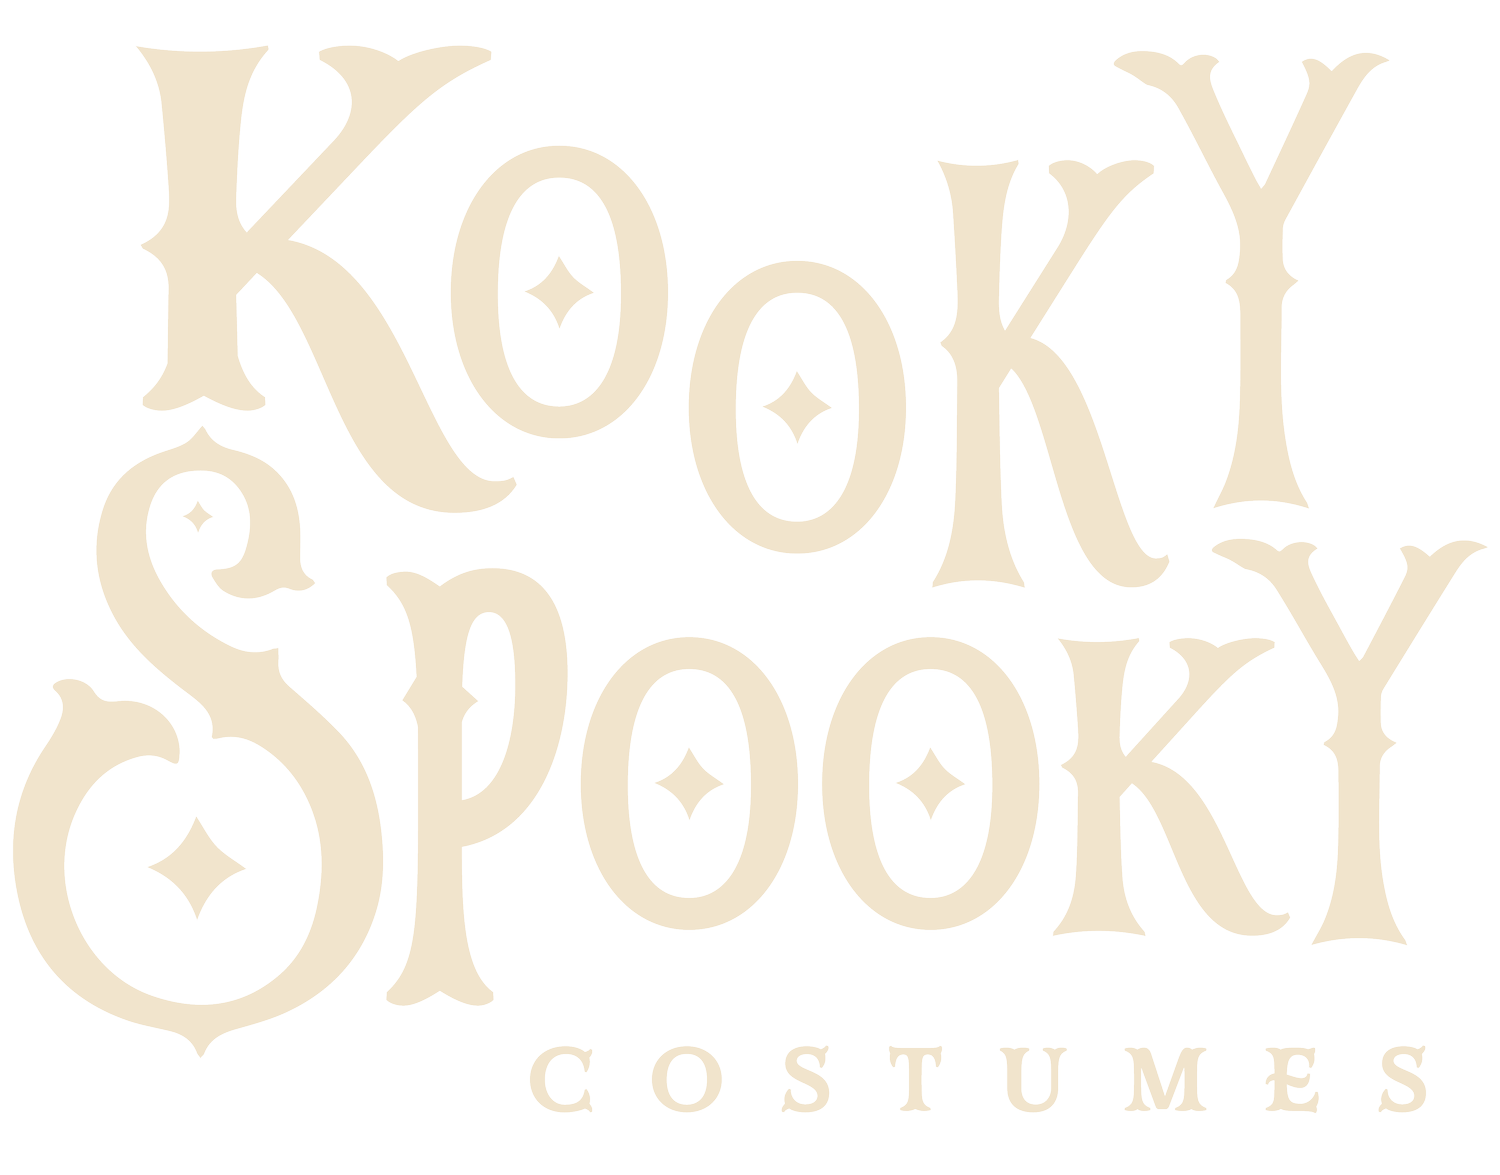 Kooky Spooky Costumes